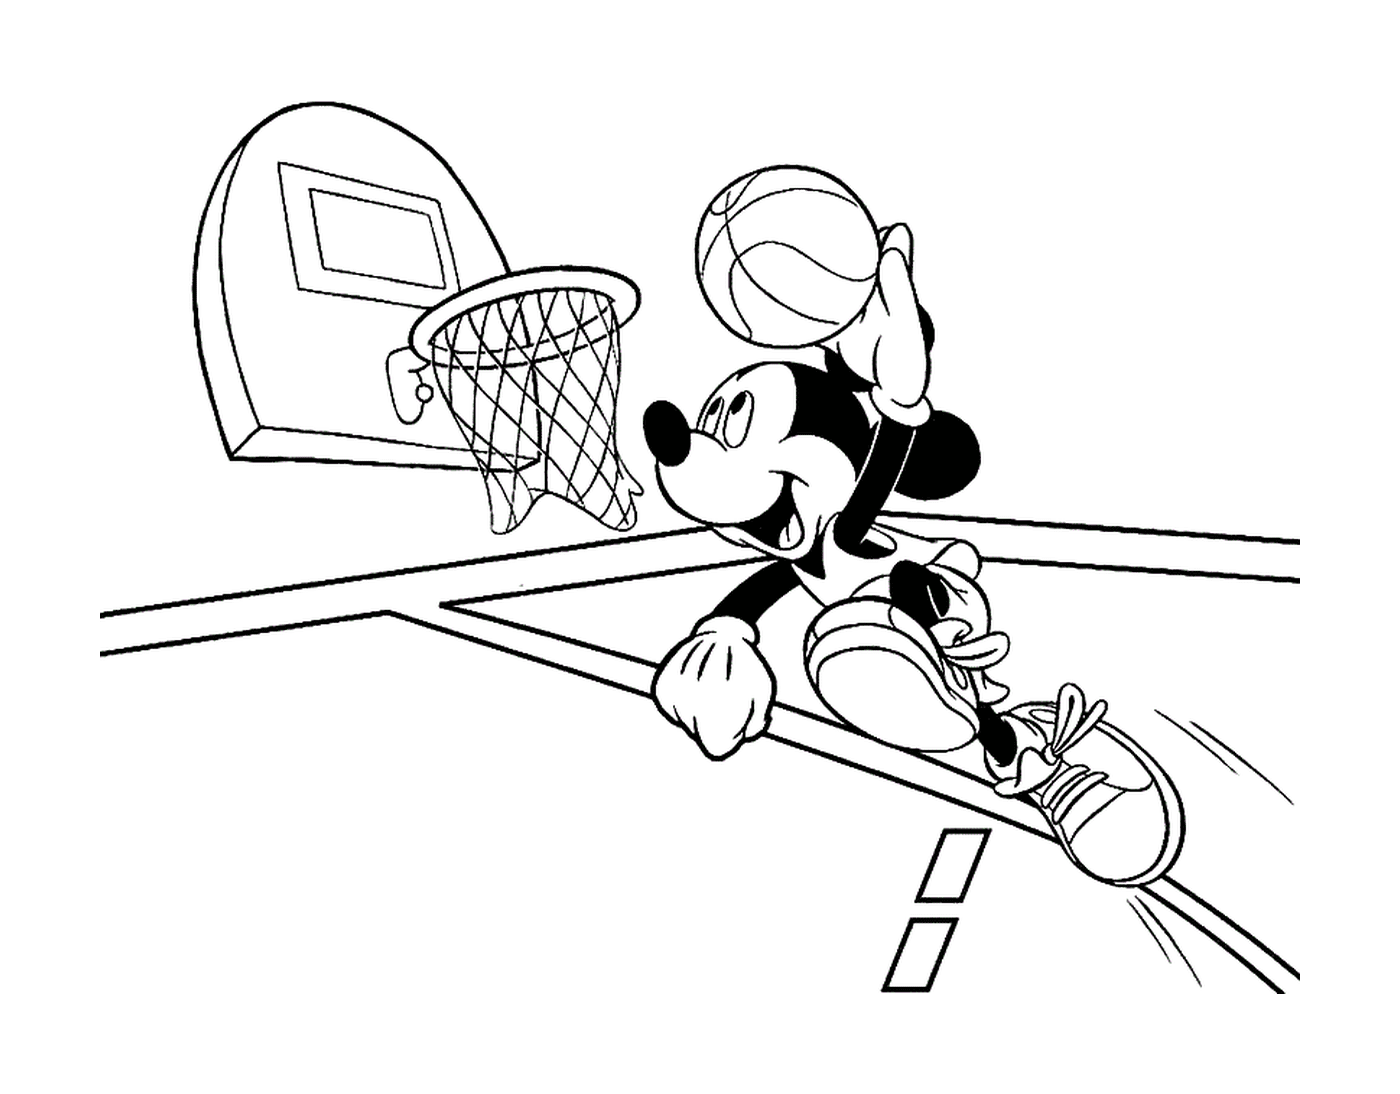  ميكي يلعب كرة السلة مع بوي 